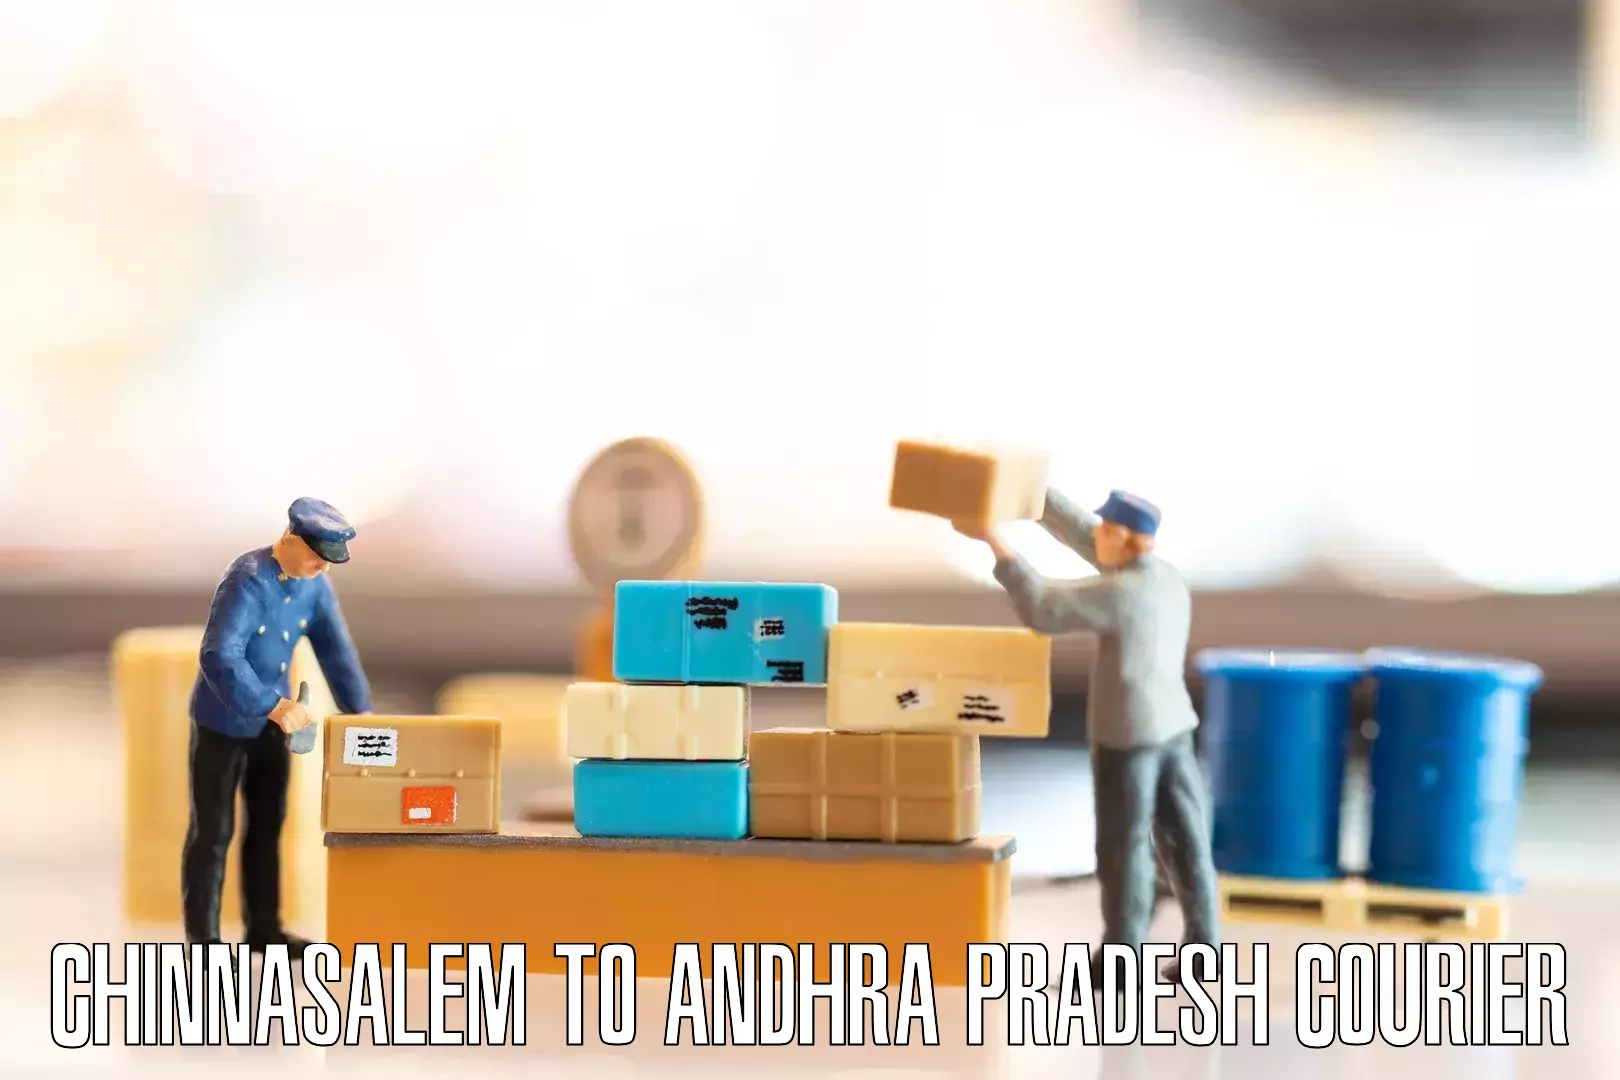 Seamless moving process Chinnasalem to Andhra Pradesh